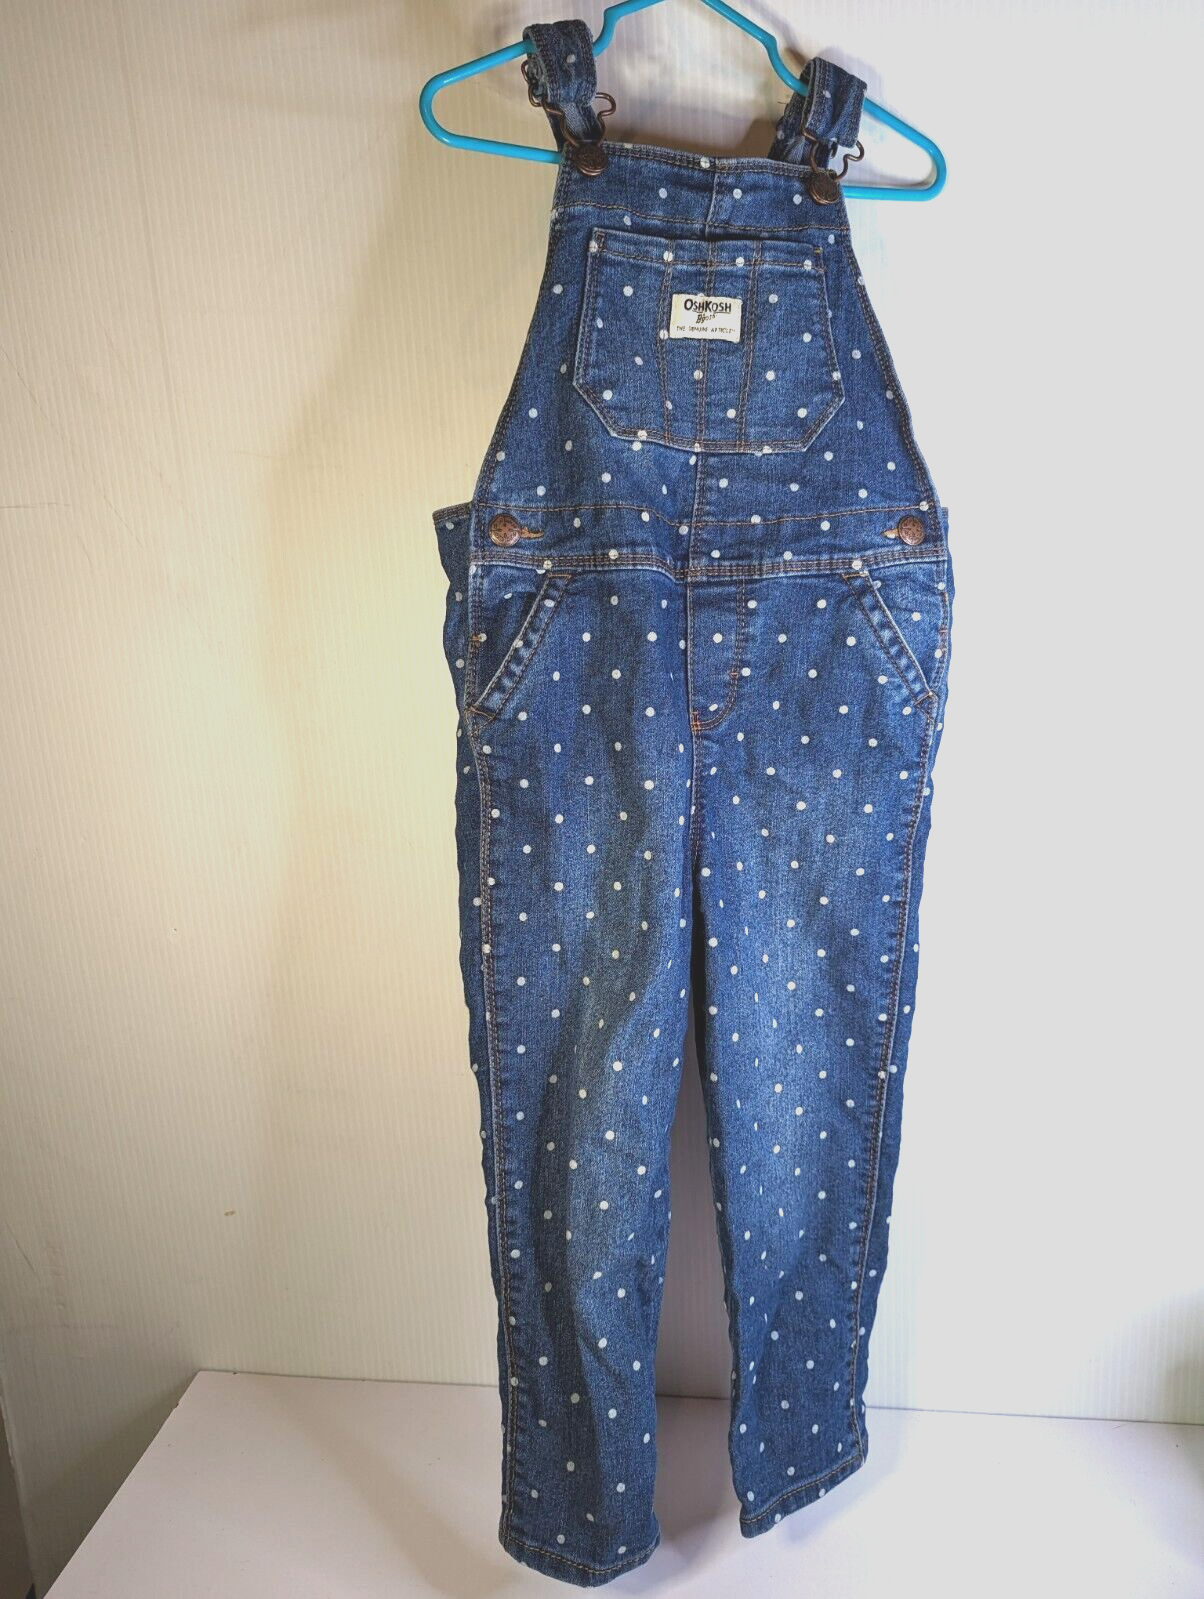 Primary image for Vintage Oshkosh B'gosh Overalls Vestbak Denim Jeans Polka Dot Size 4T Boys Girls